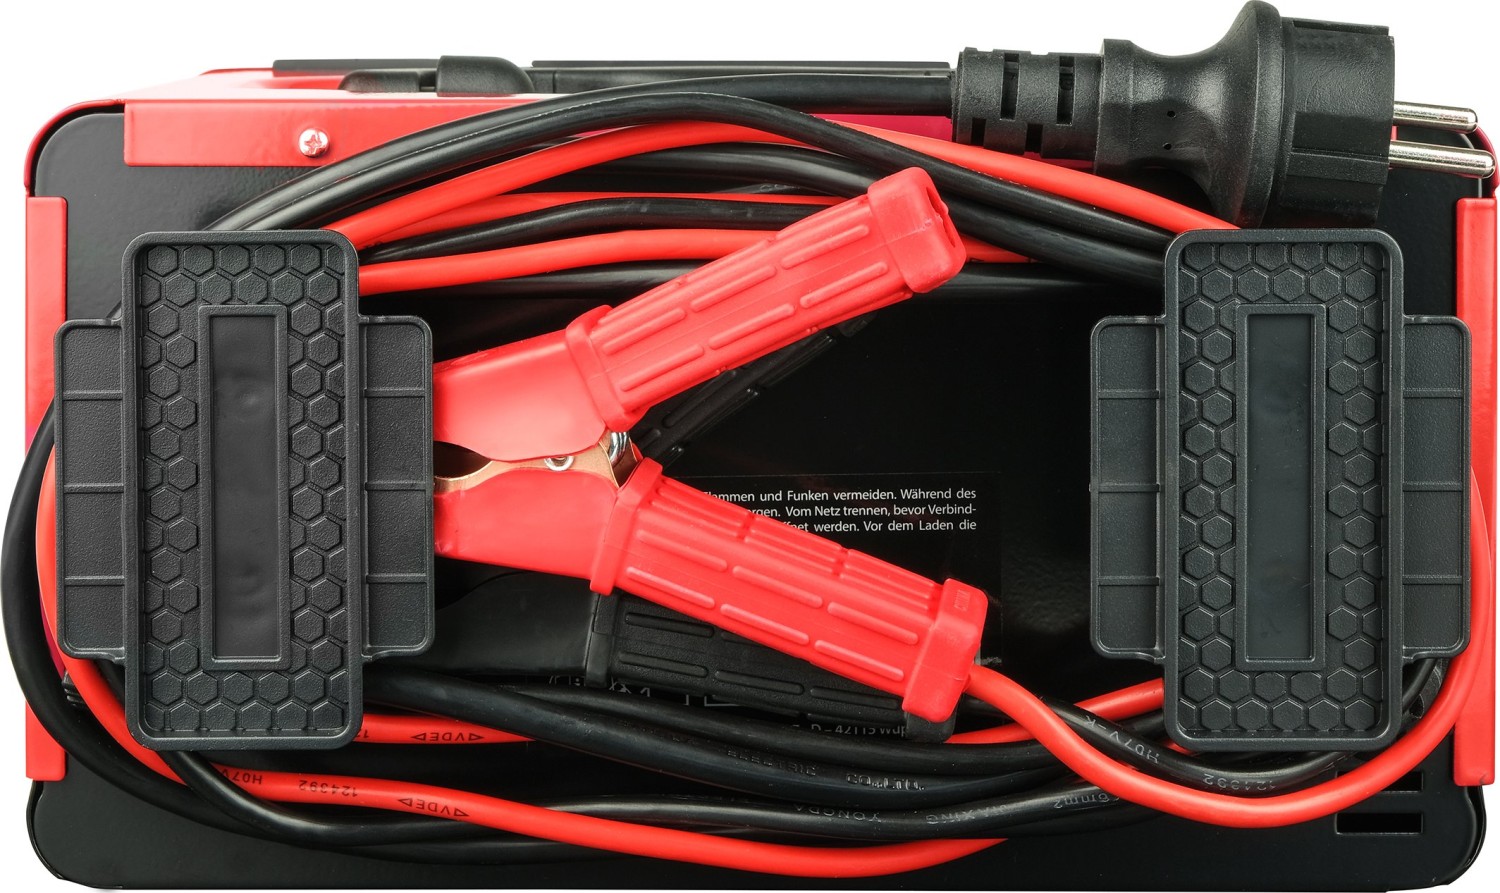 APA Batterie-Ladegerät mit Kabelaufroller (Ladestrom: 4 A, AGM-/Gel-/Nass-/Blei-Säure-Batterien  6/12 V)